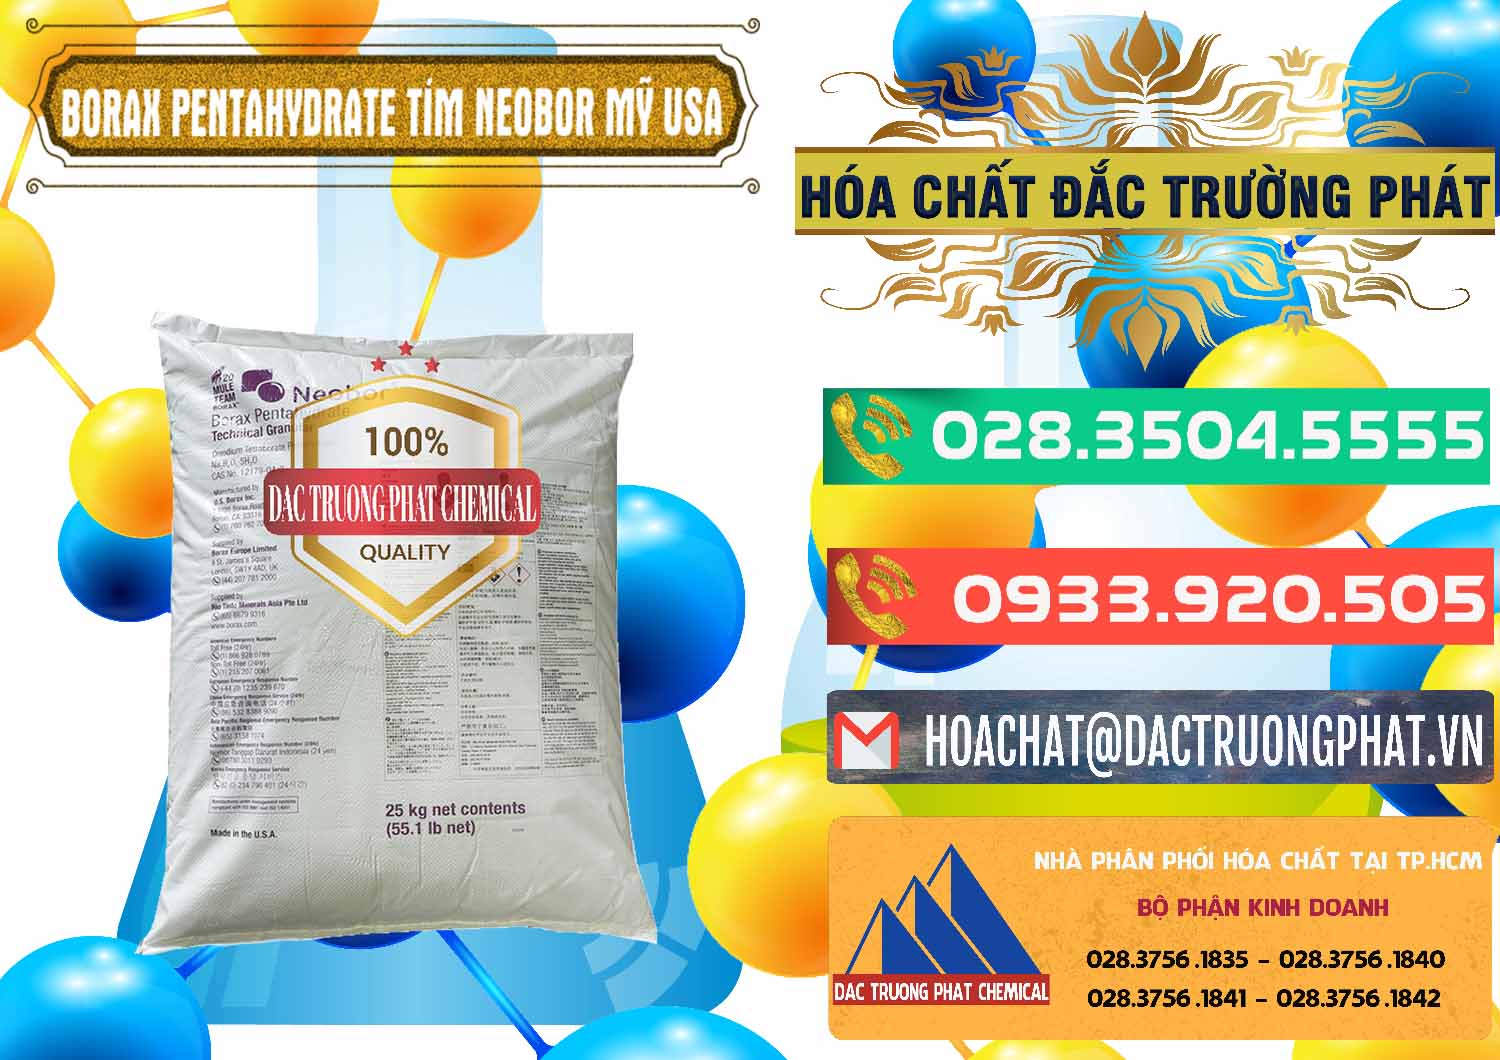 Công ty bán và cung cấp Borax Pentahydrate Bao Tím Neobor TG Mỹ Usa - 0277 - Công ty chuyên cung cấp _ bán hóa chất tại TP.HCM - congtyhoachat.com.vn